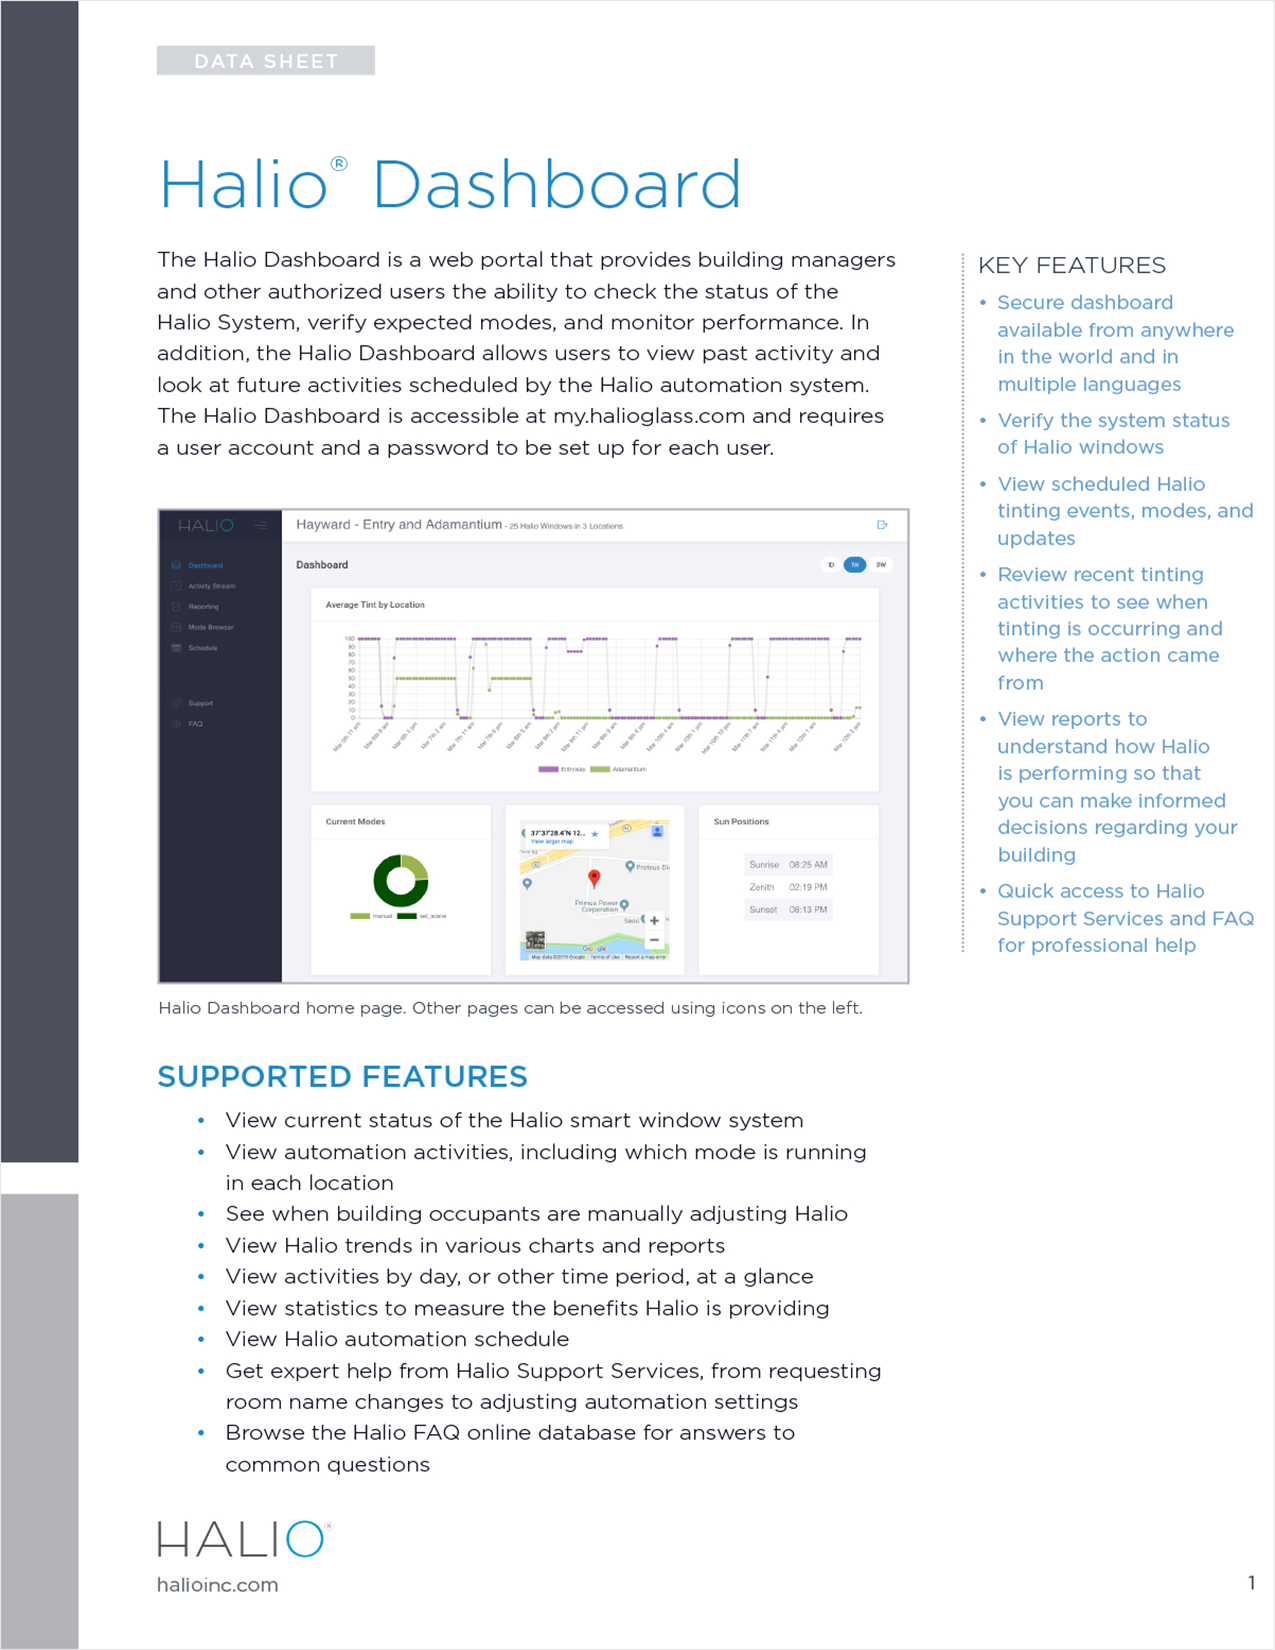 HALIO Dashboard Data Sheet